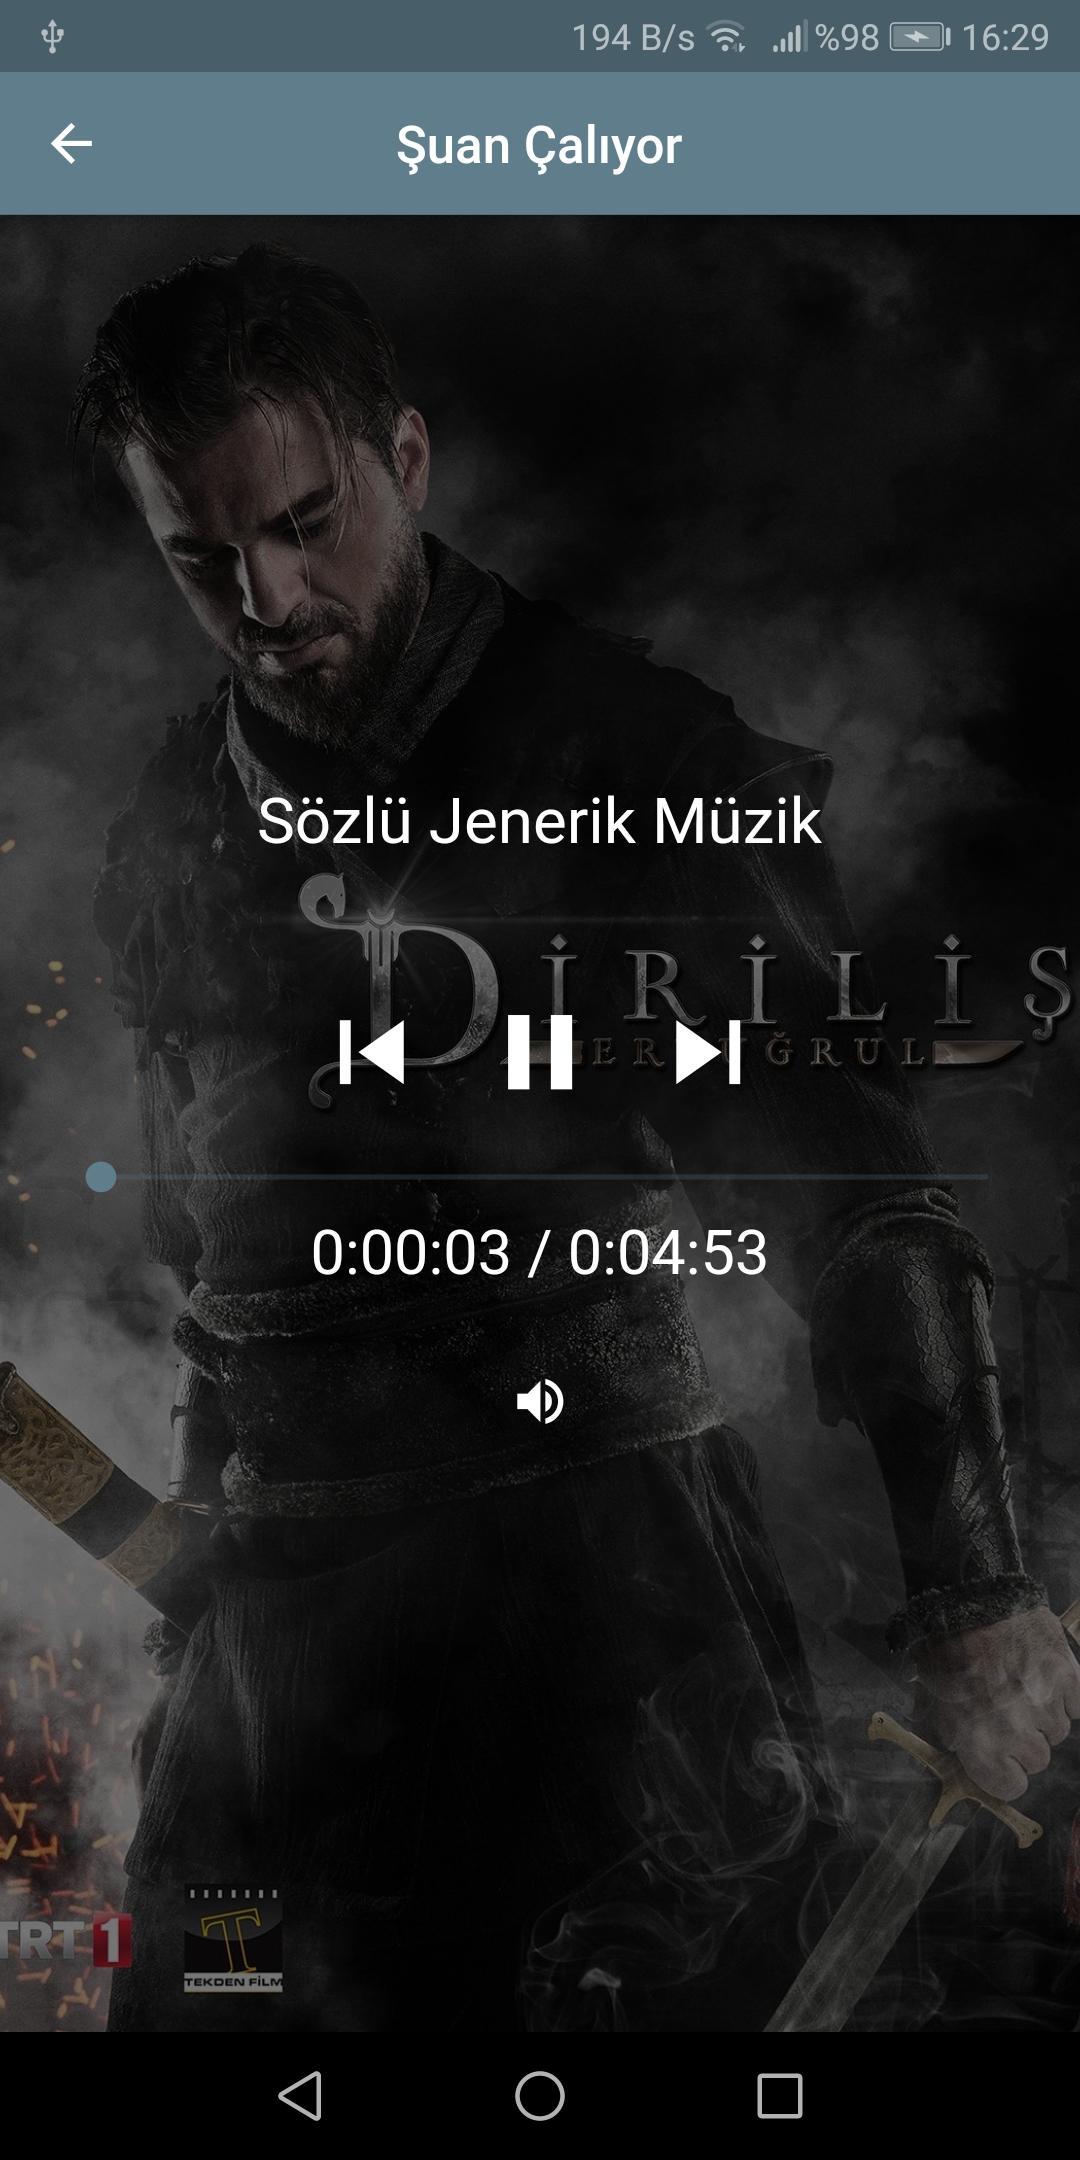 Diriliş Ertuğrul Müzikleri 2019 APK voor Android Download